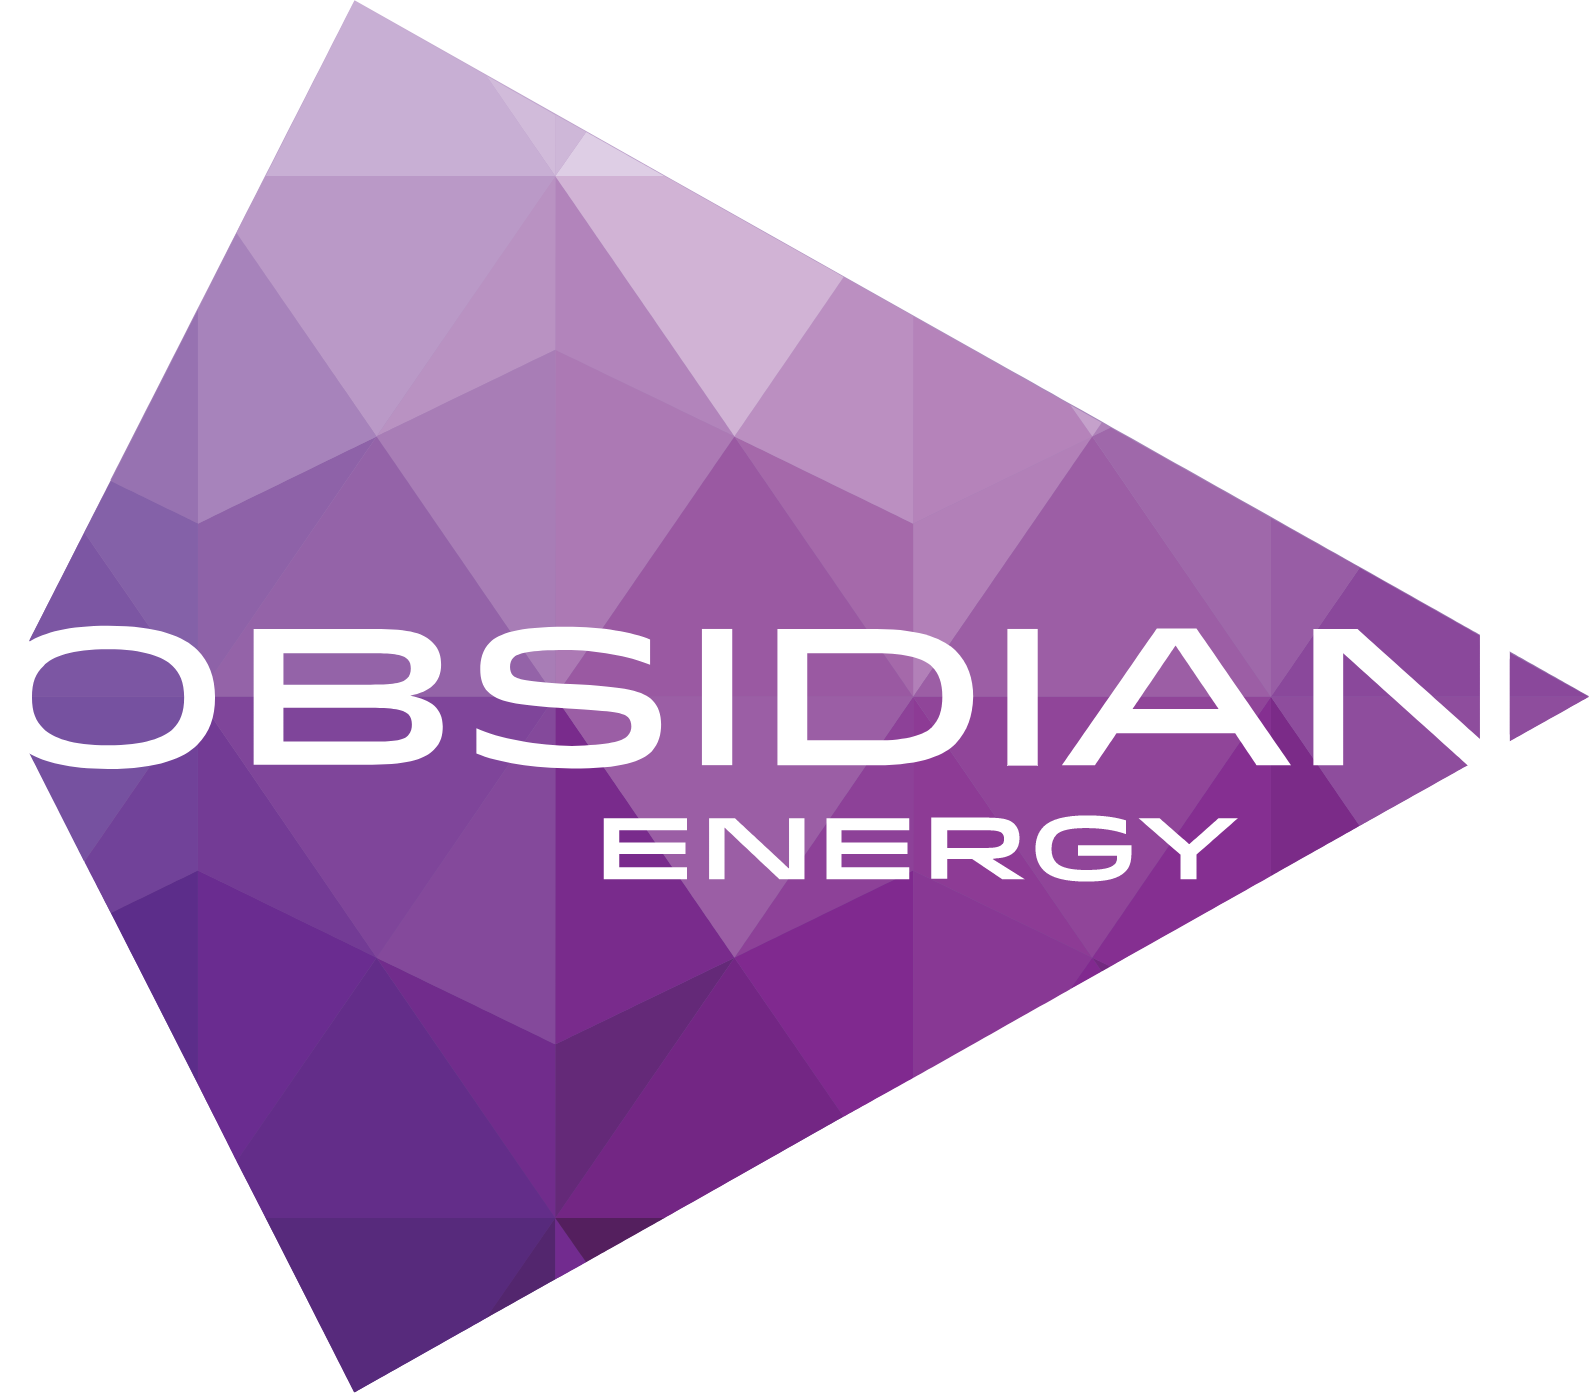 Obsidian Energy logo large (transparent PNG)